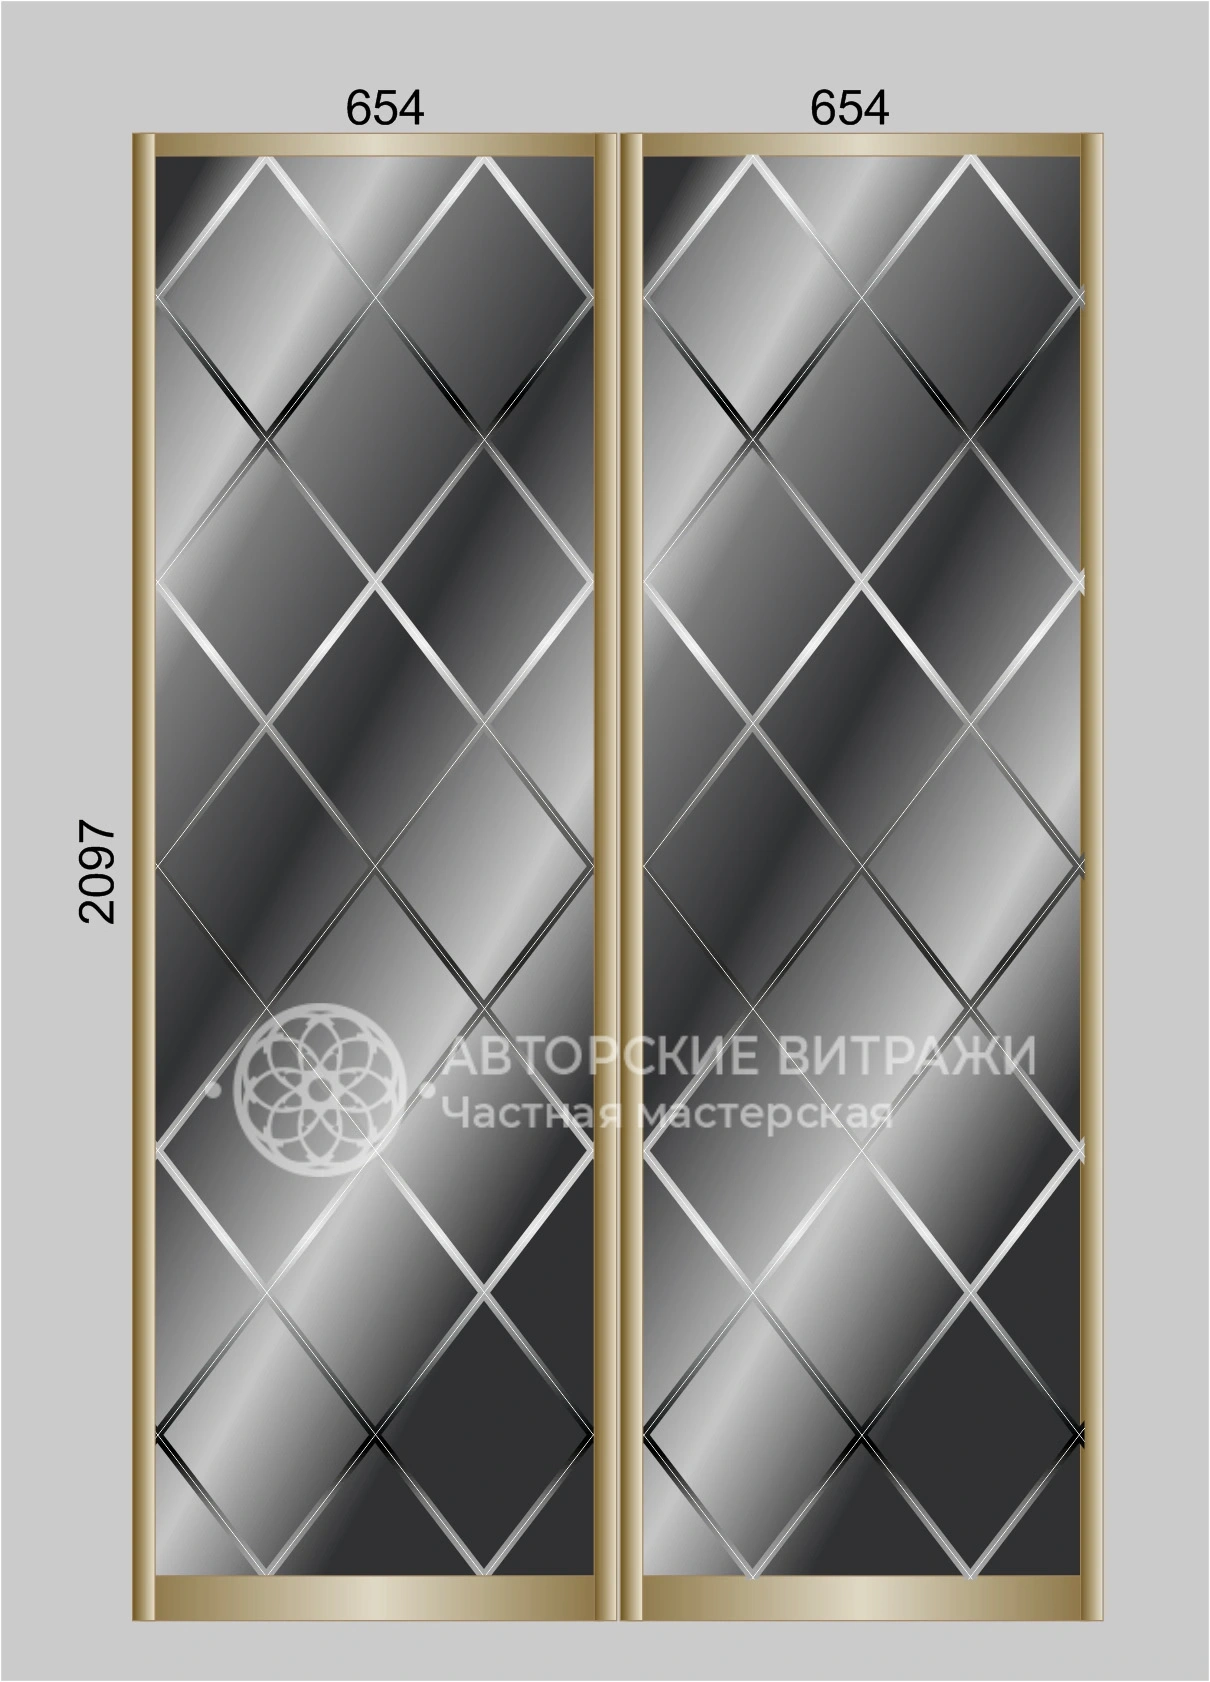 Зеркало для шкафа-купе с классическим геометрическим рисунком, 2097х654 - 2 шт